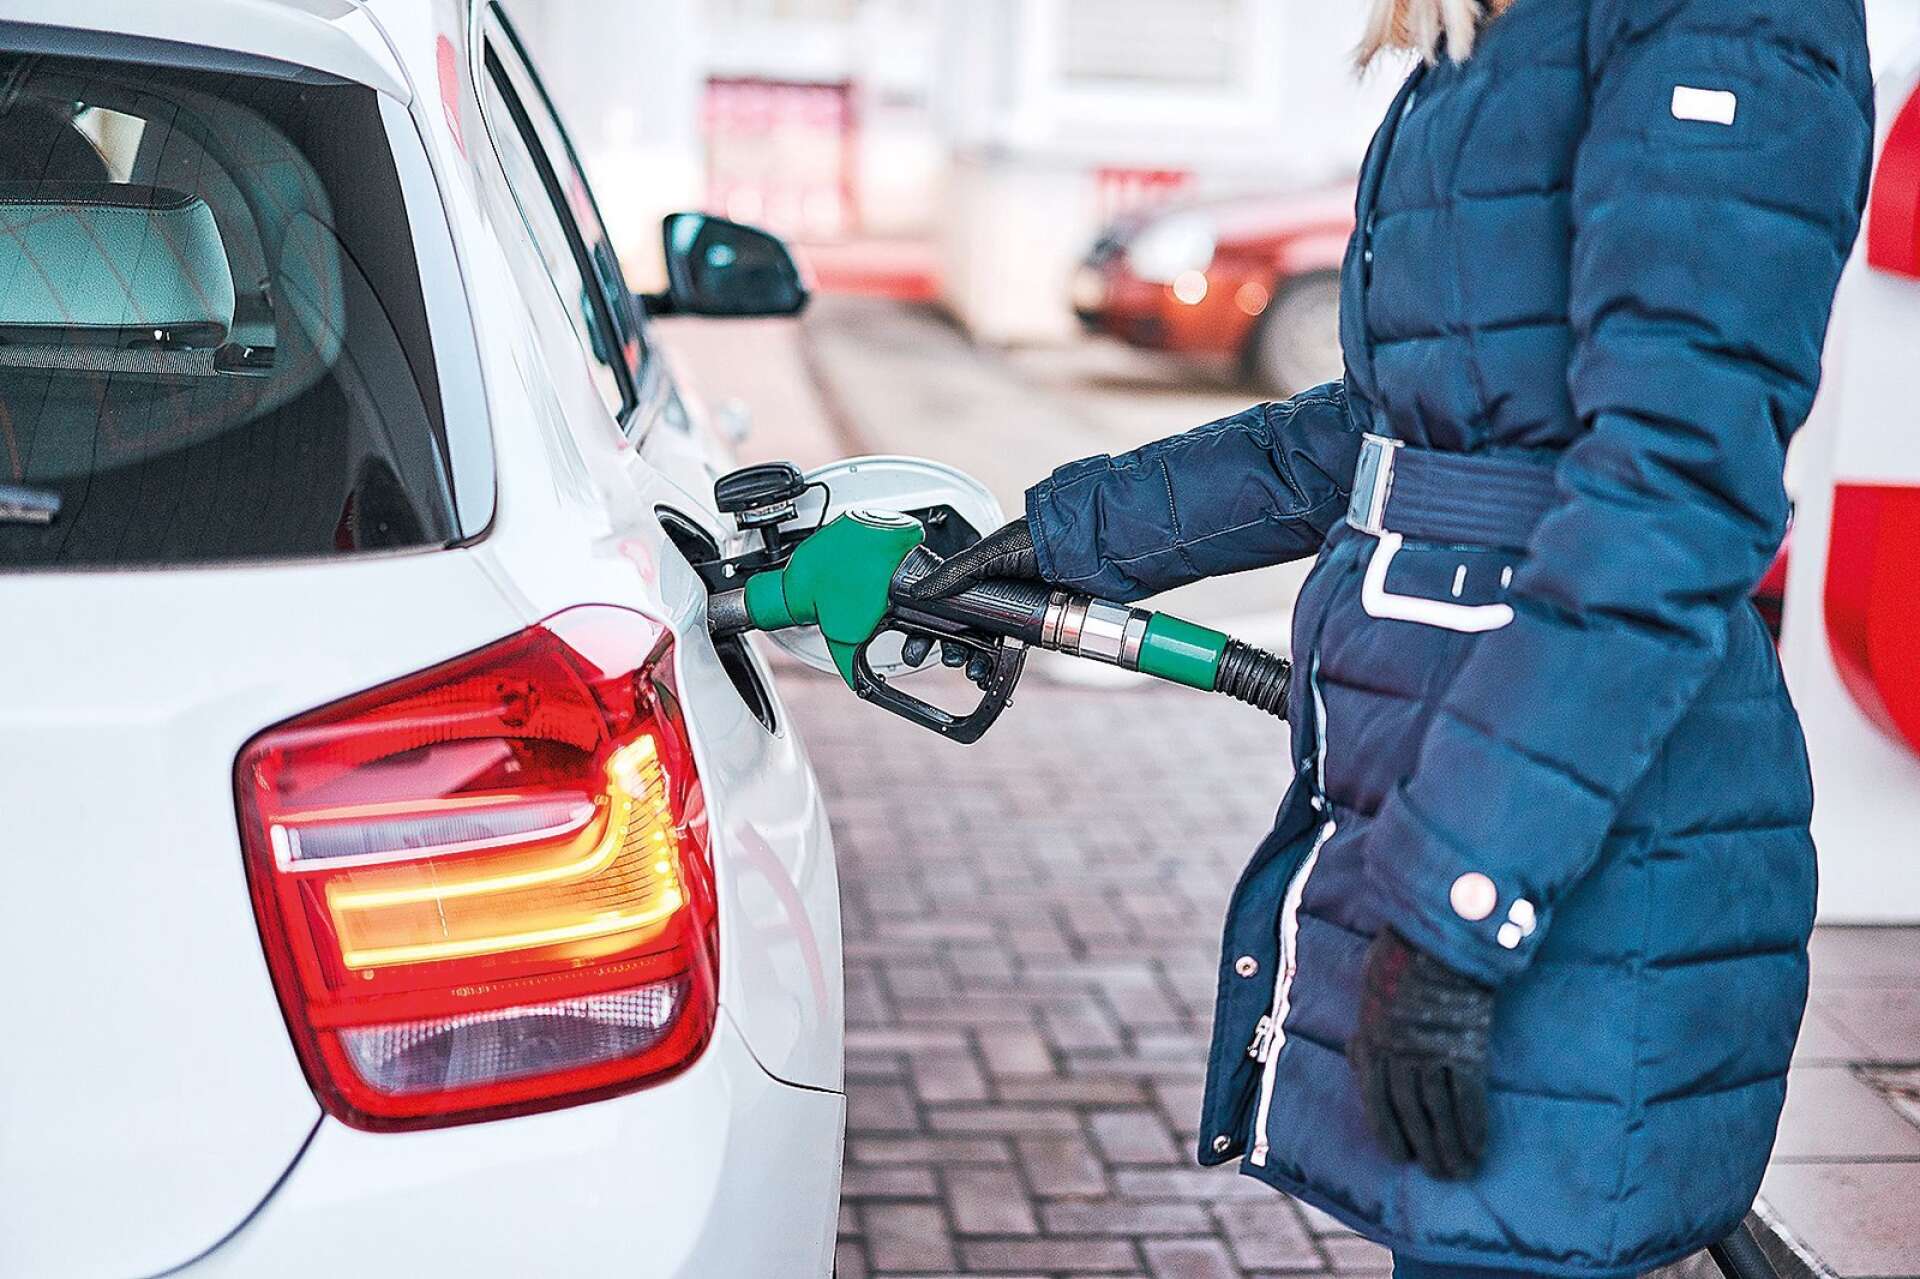 POTENTIAL. Bensinbilen har idag sämst potential att sänka sina utsläpp. En bensinbil kan dock vanligen konverteras för att kunna köras på etanol eller biogas.